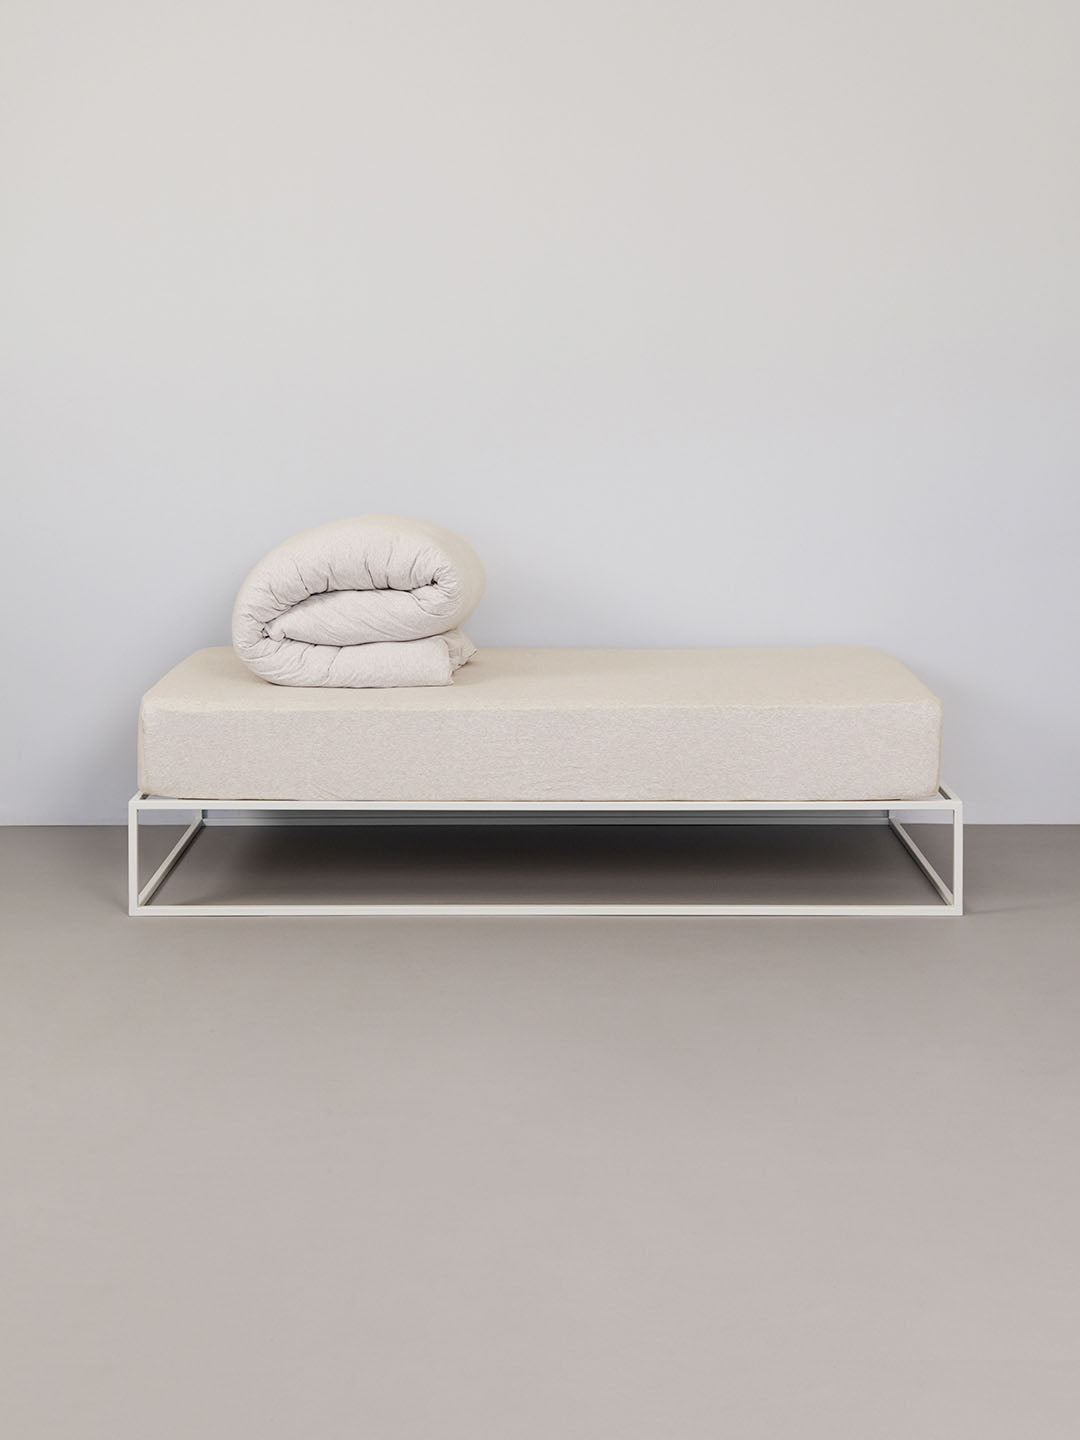 מיטת ברזל לבנה עם סט מצעים איכותי הכולל ציפה וציפיות בצבע אבן מלאנג'